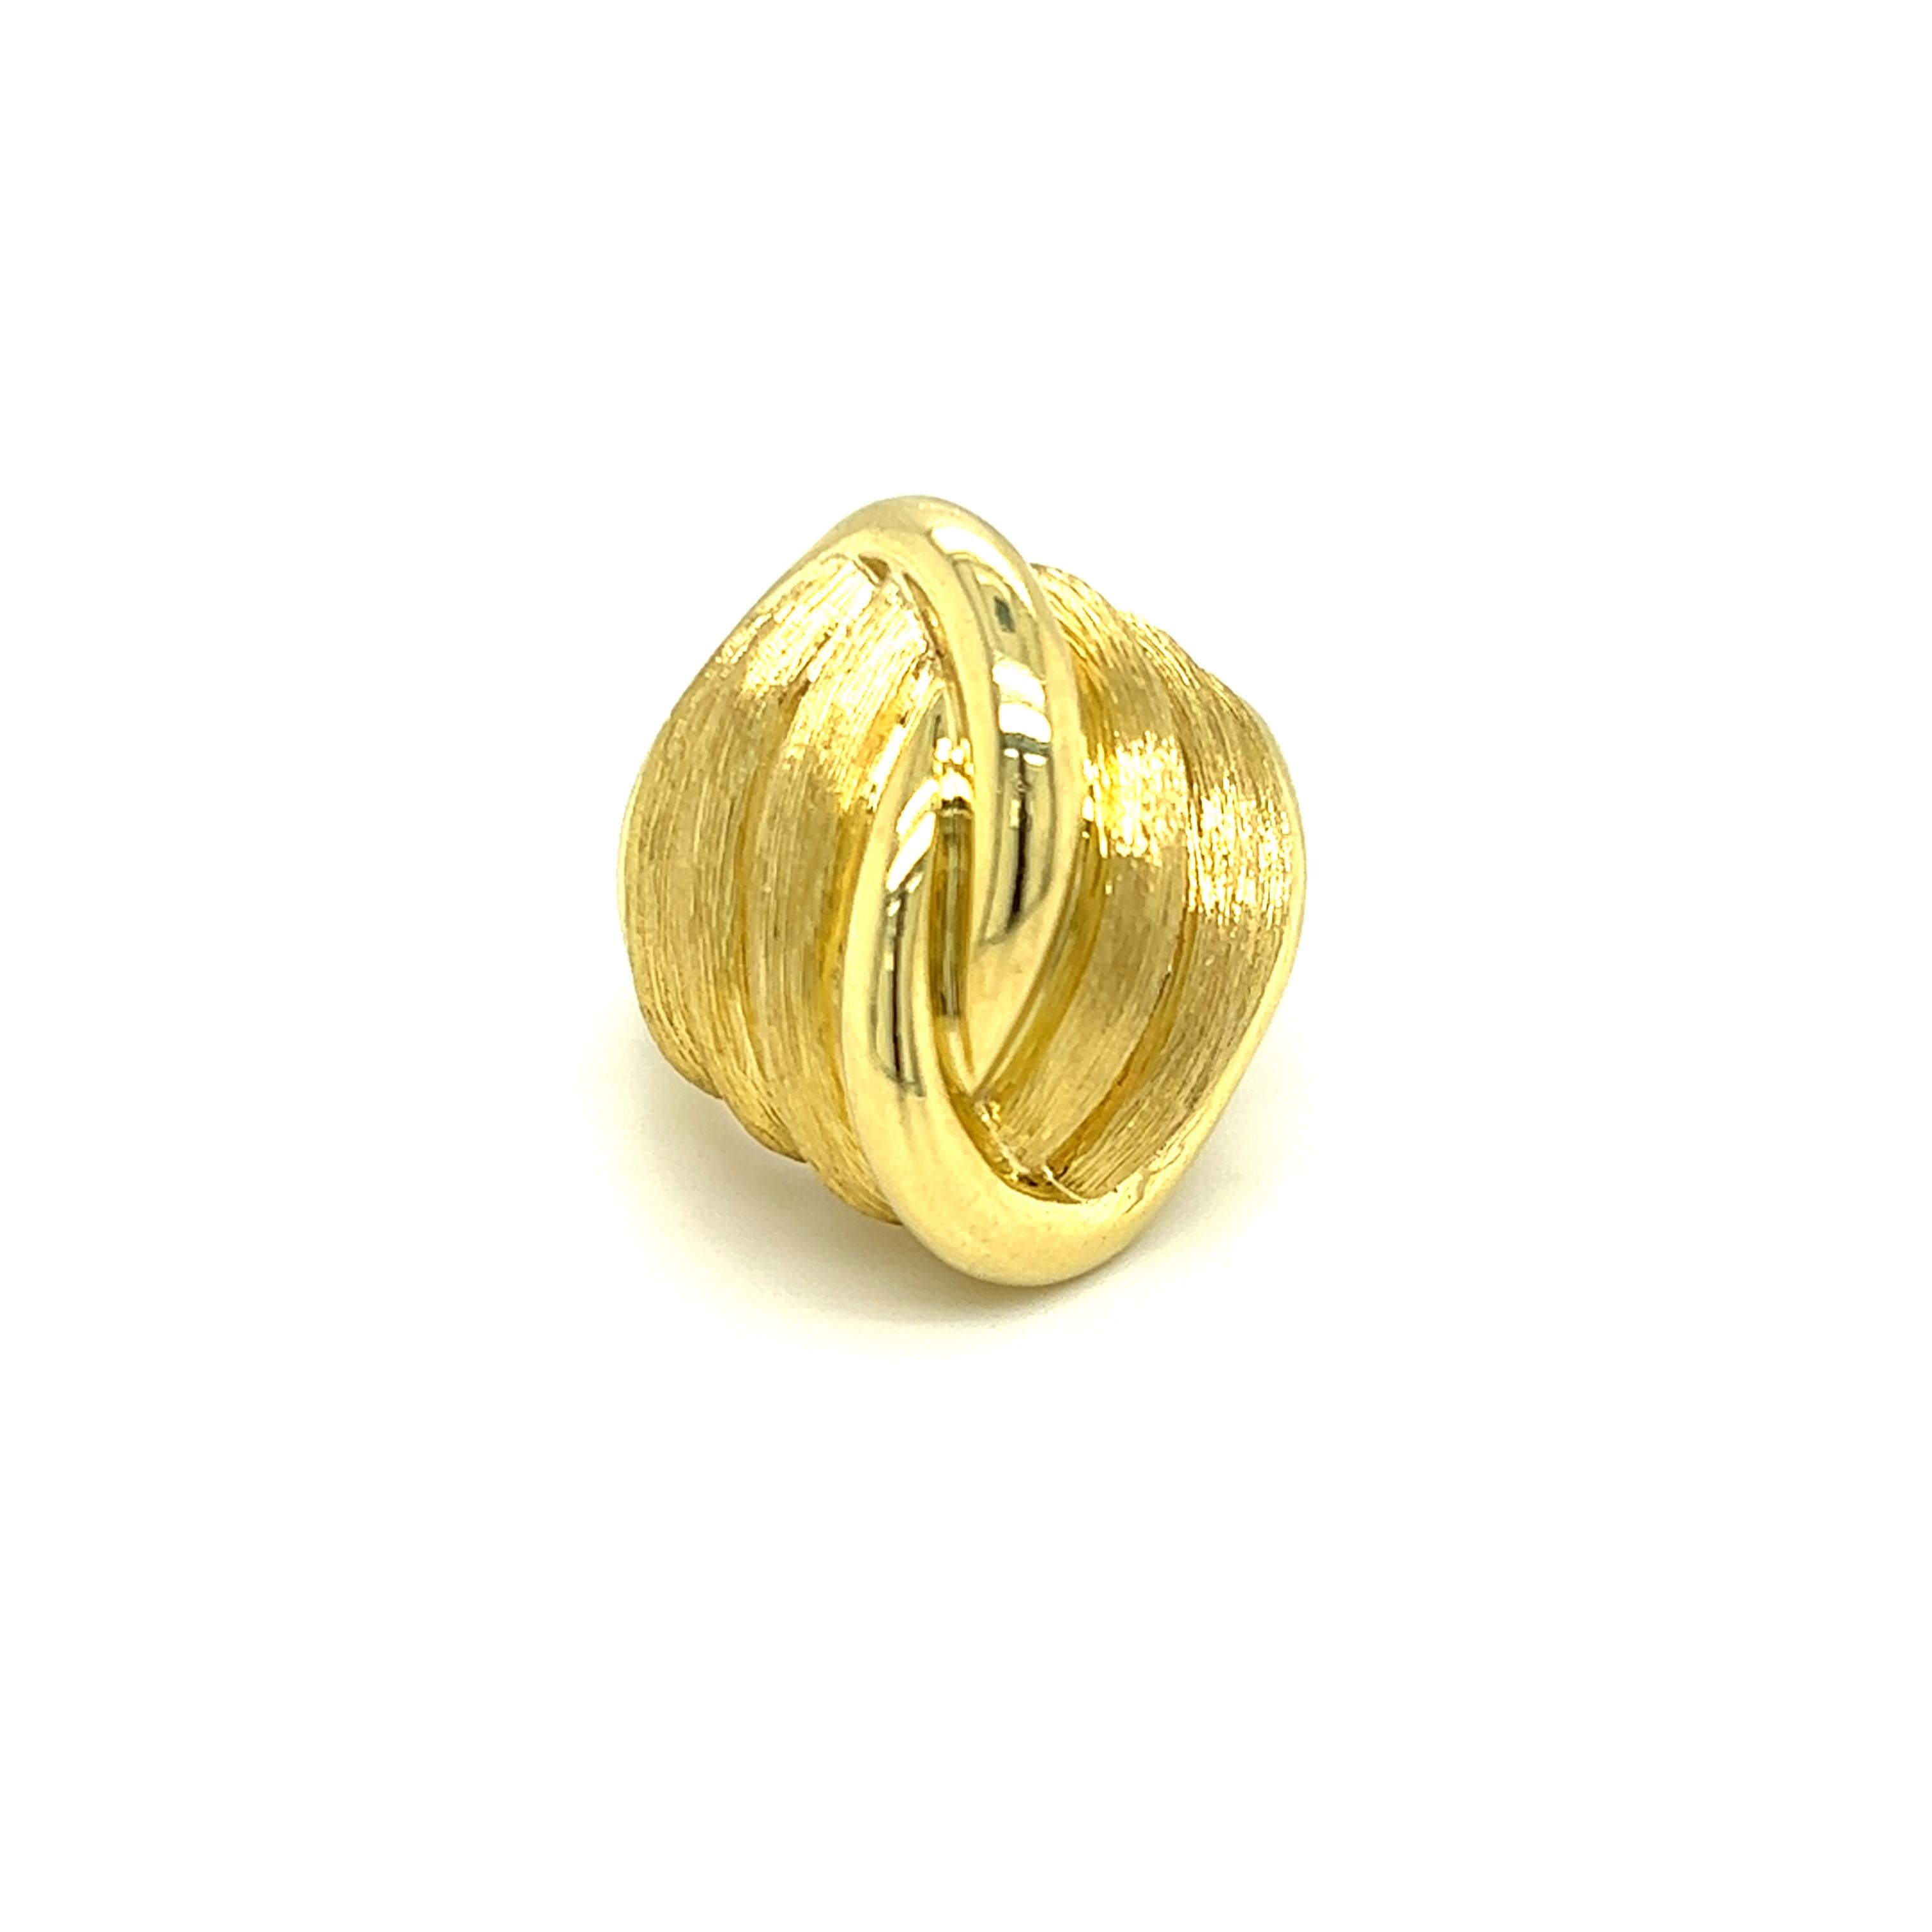 Dieser einzigartige Henry Dunay Textured Knot Cocktail Ring ist ein tragbares Kunstwerk, das aus 18 Karat Gelbgold gefertigt wurde. Ein moderner Statement-Ring mit zeitlosem Look. Das charakteristische Knotendesign des amerikanischen Goldschmieds